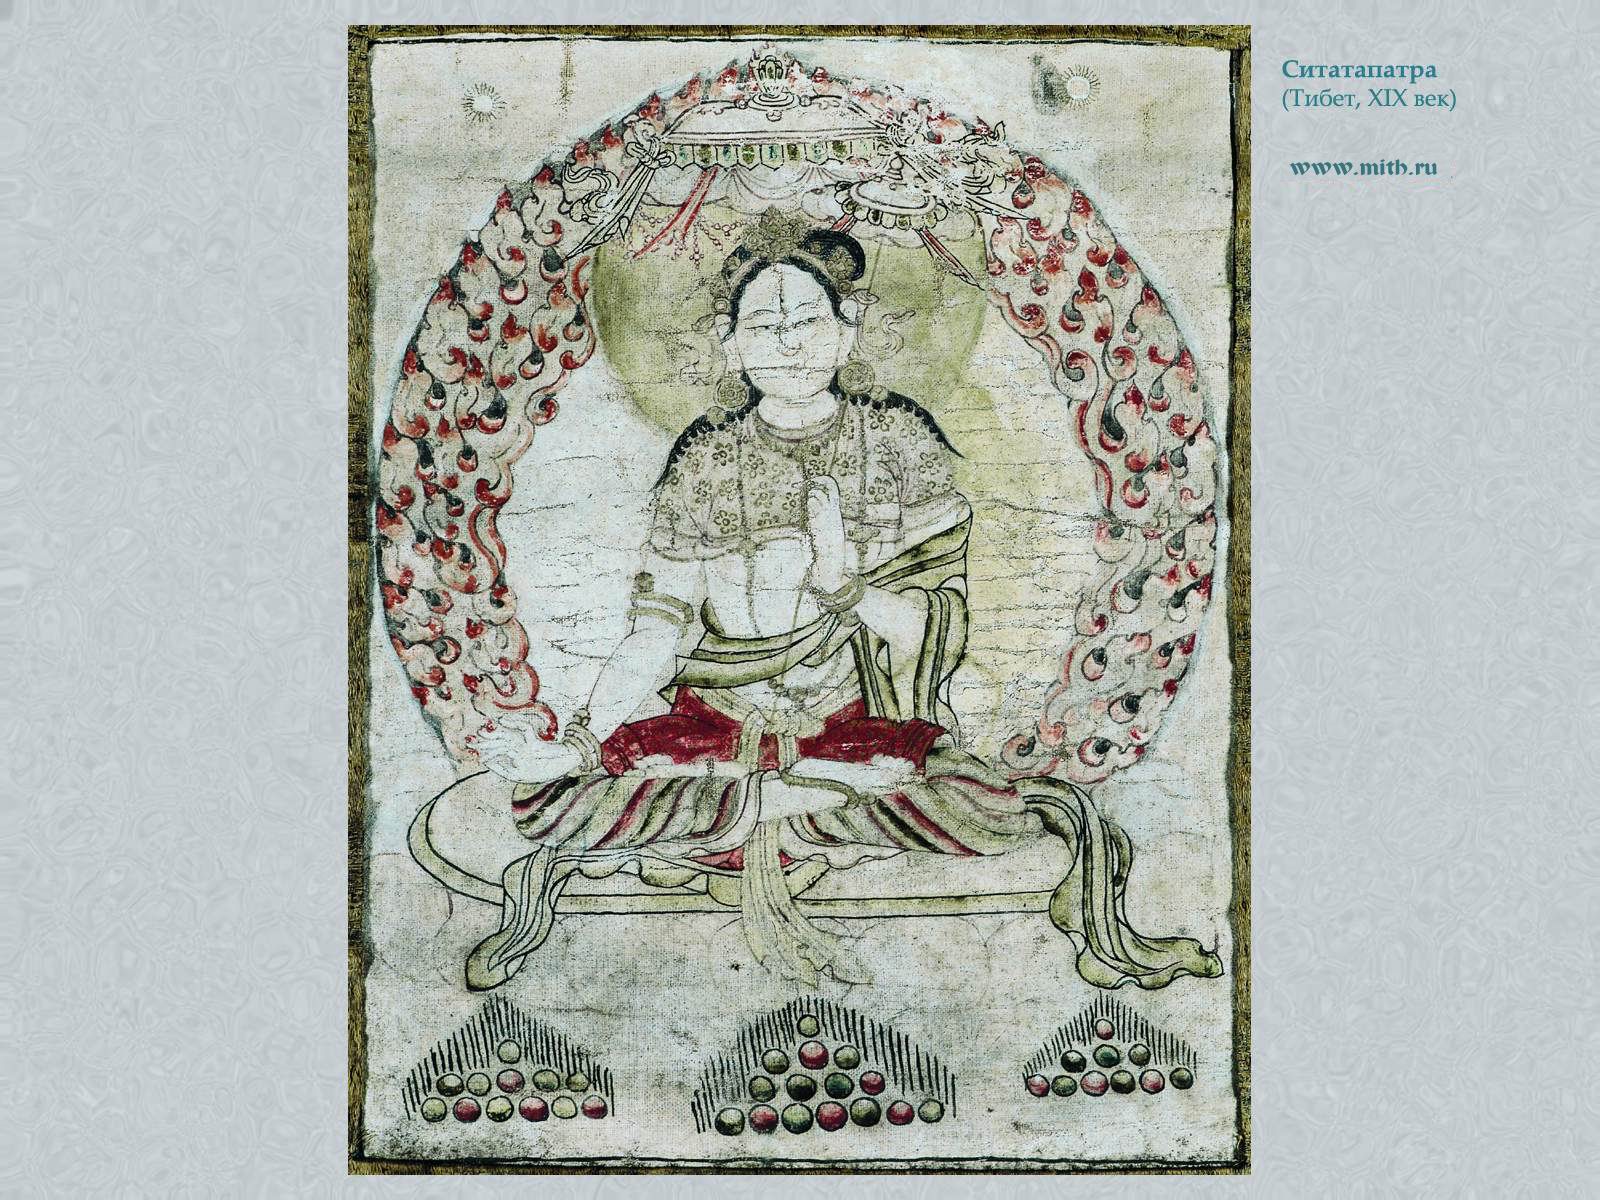 Ситатапатра

перейти к книге 'Тибетская живопись'